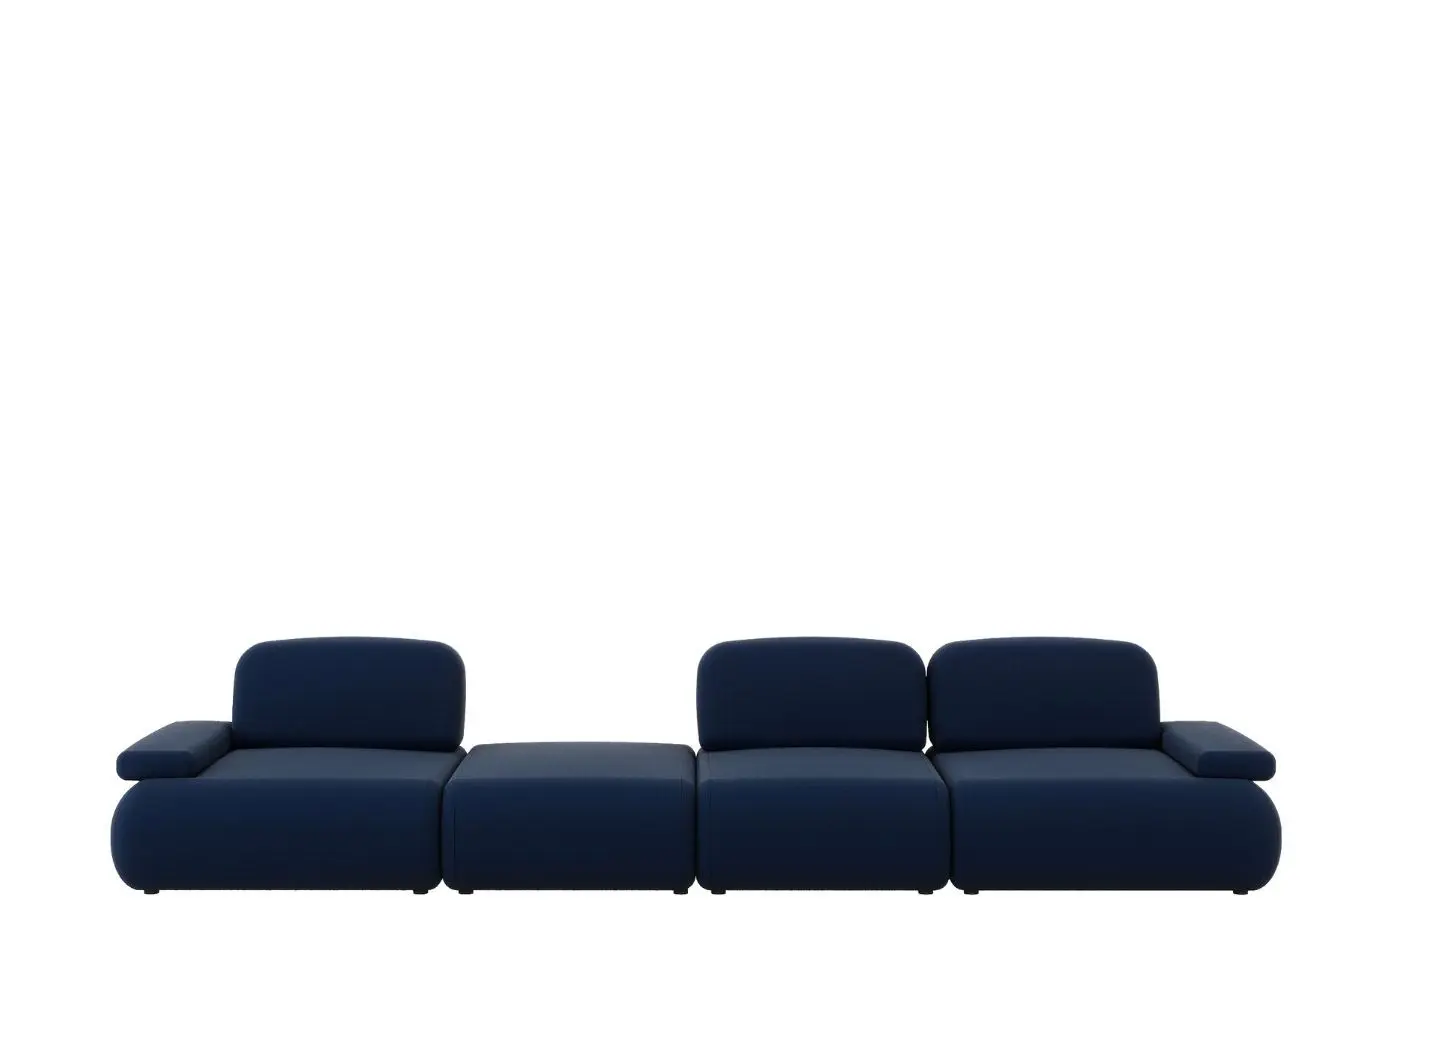 BRISTOL modular sofa